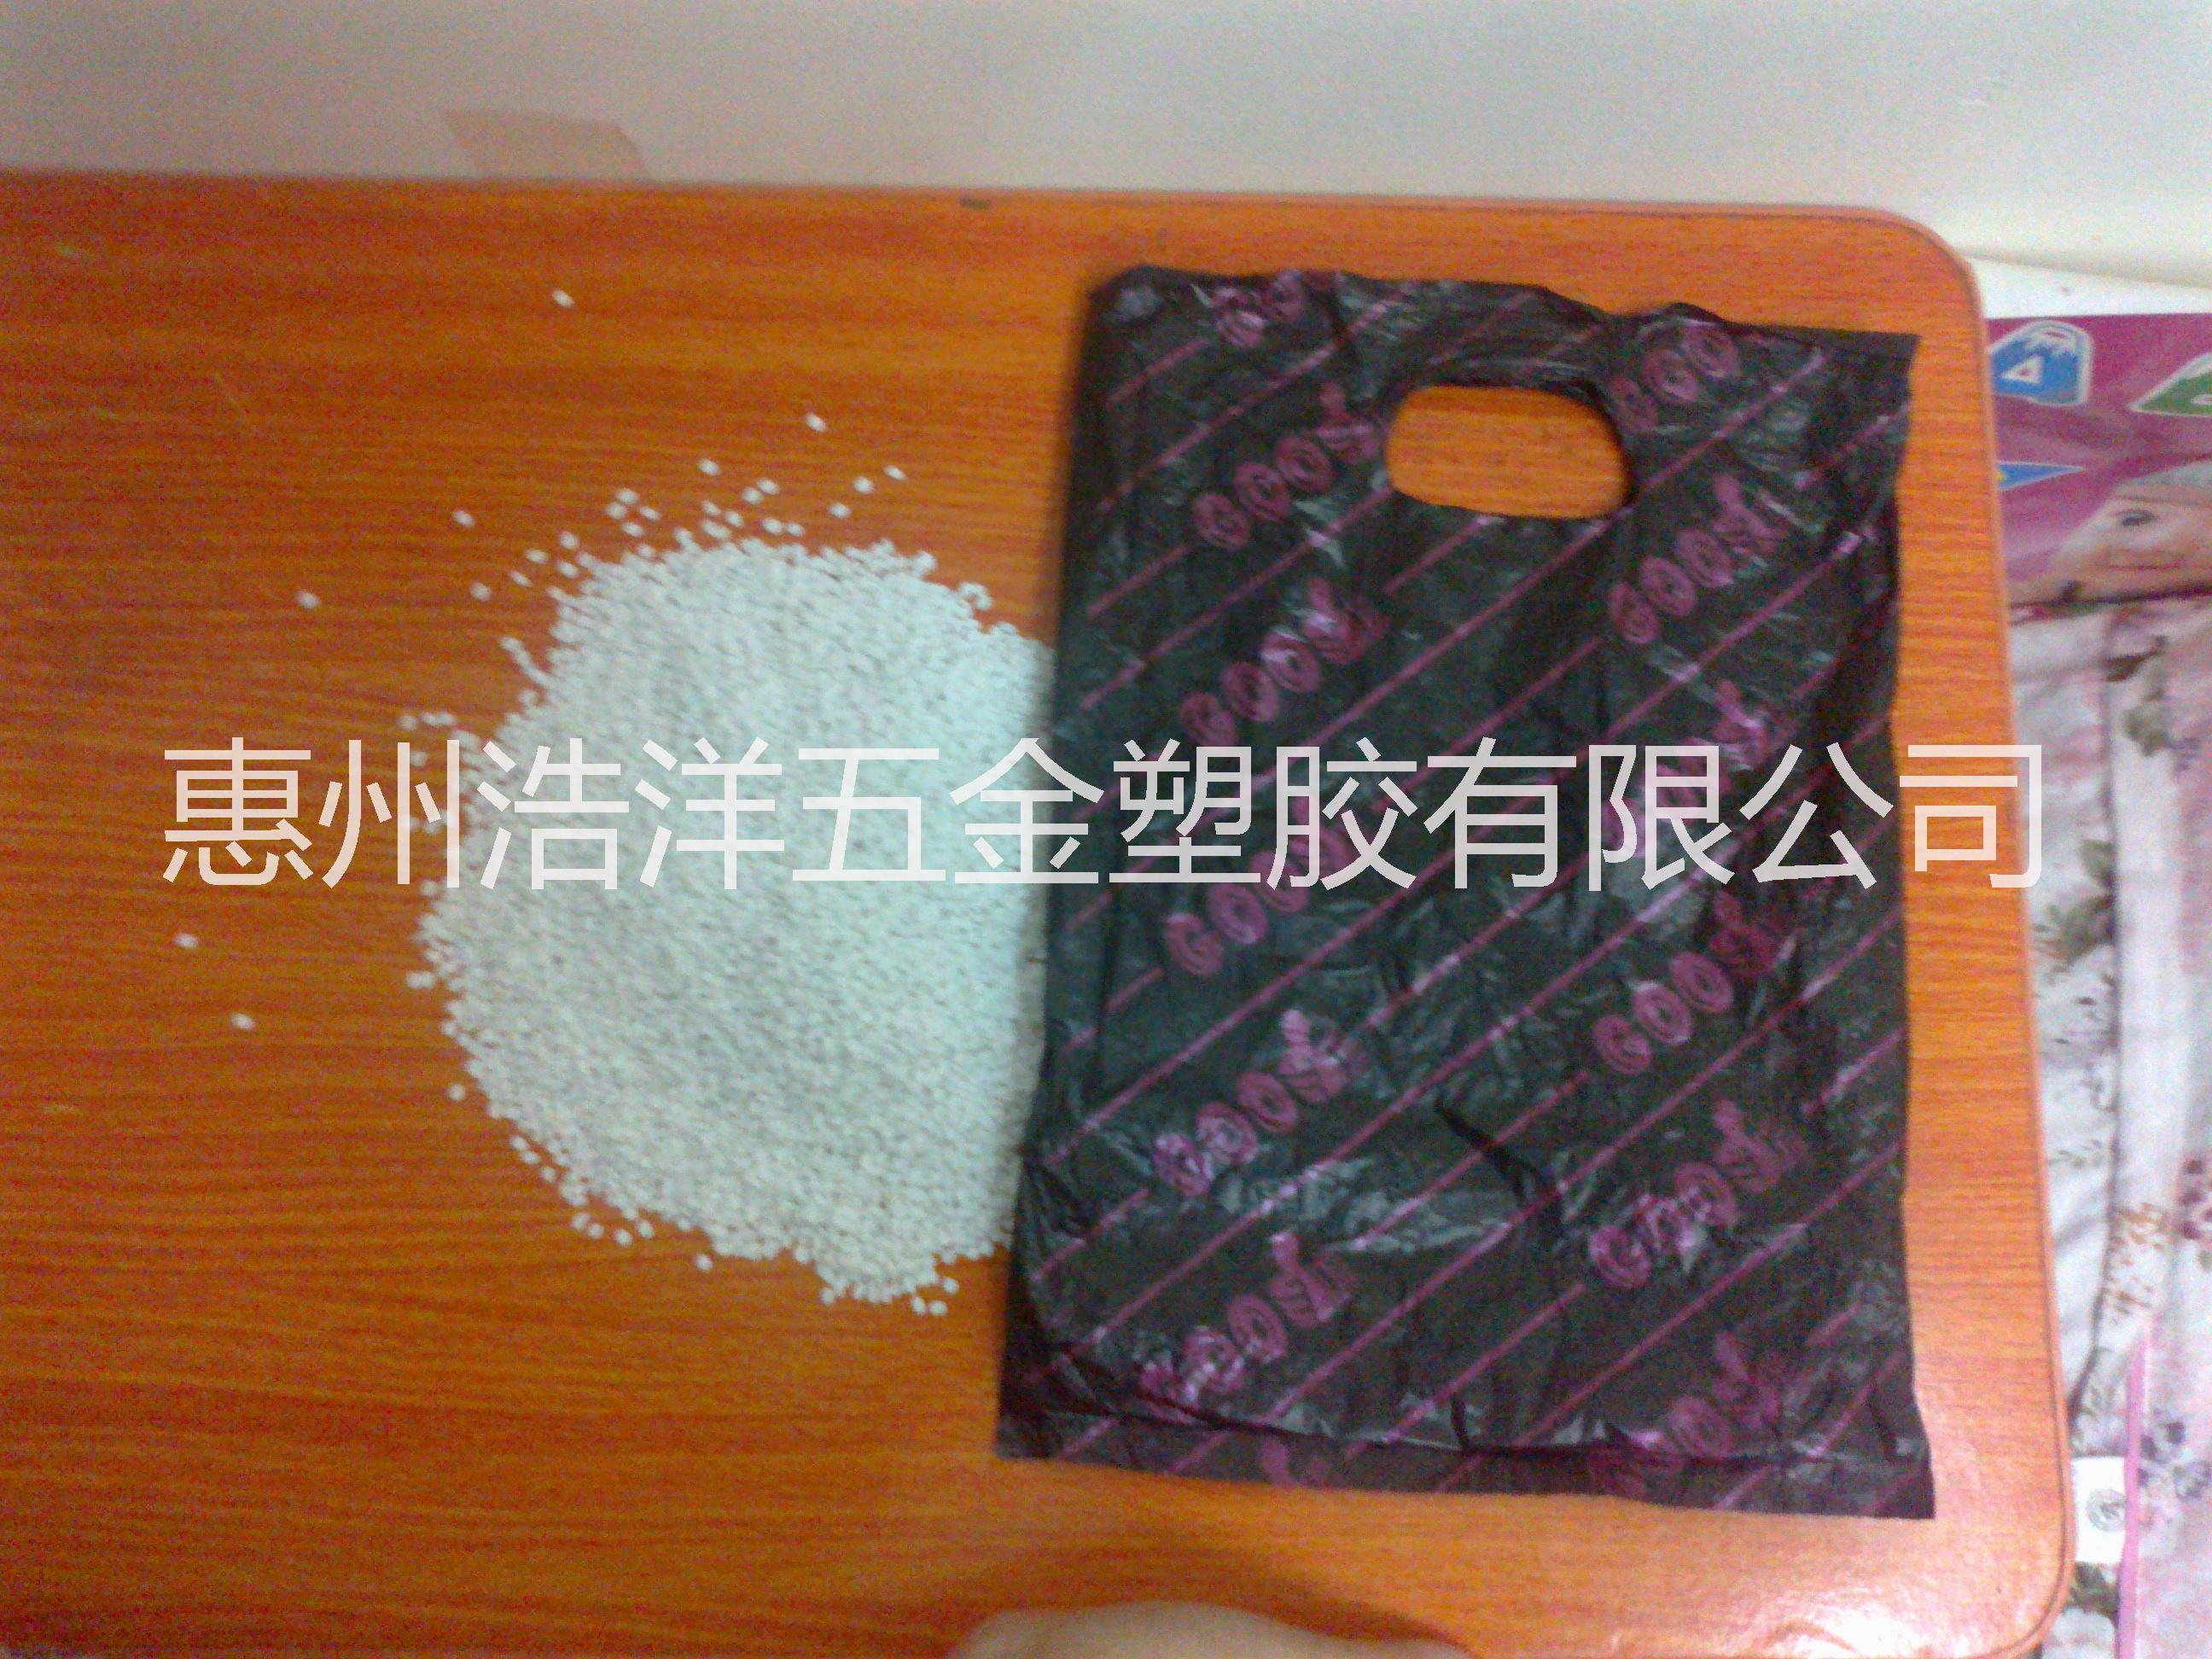 销售 PE填充母料生产厂家 惠州 东莞 广州填充母料供应商